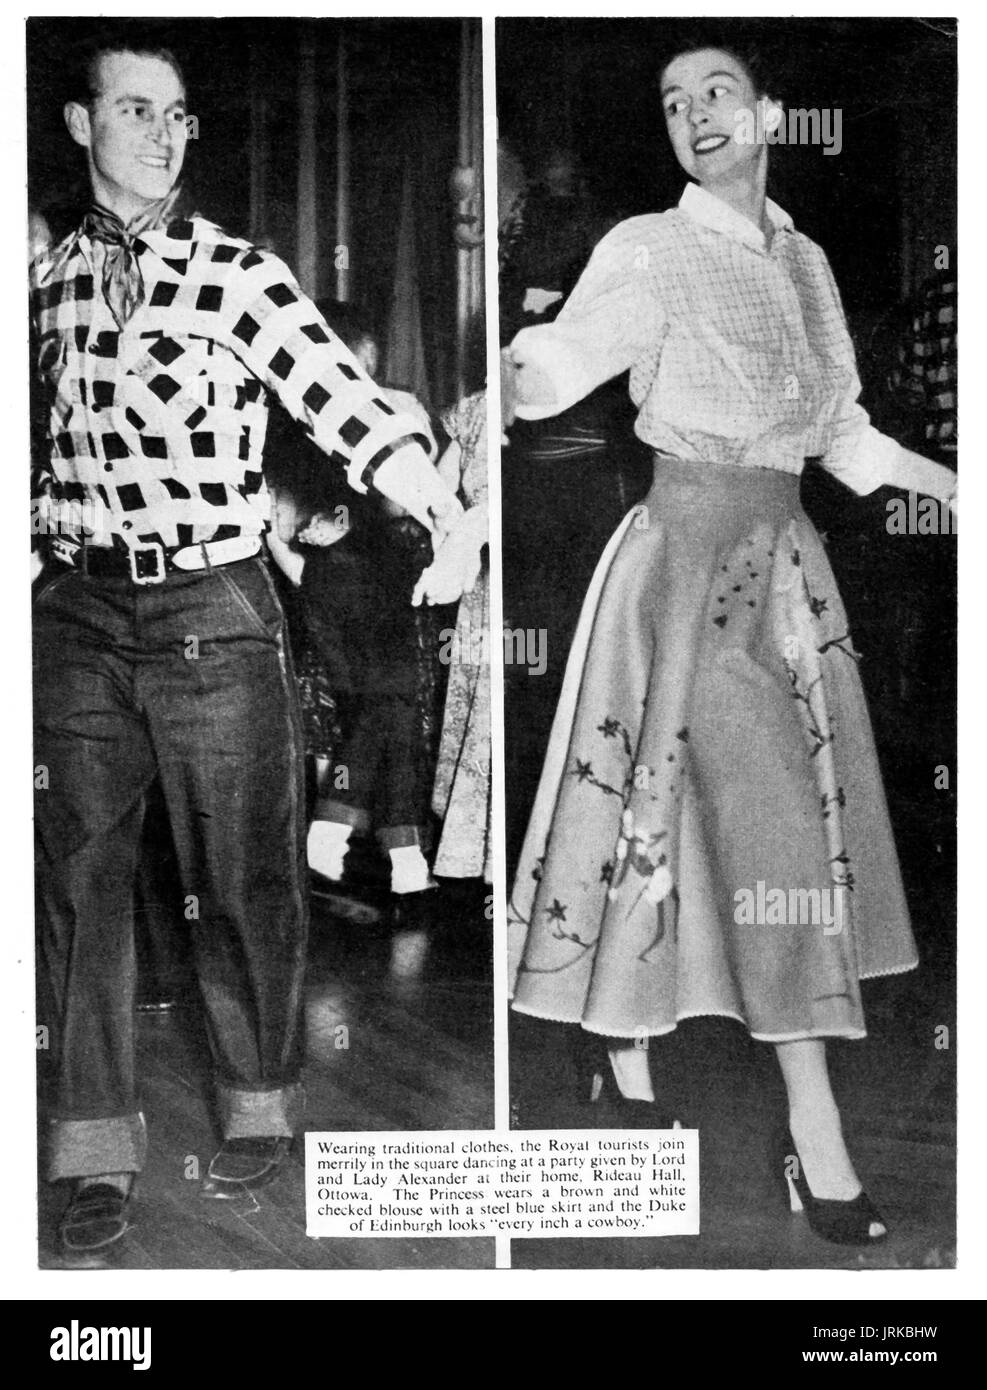 Magazin-Seite Abbildung von 1951 mit der Duke of Edinburgh und Prinzessin Elizabeth (später Königin Elizabeth II von Großbritannien) Land Tanz in Kanada. Stockfoto